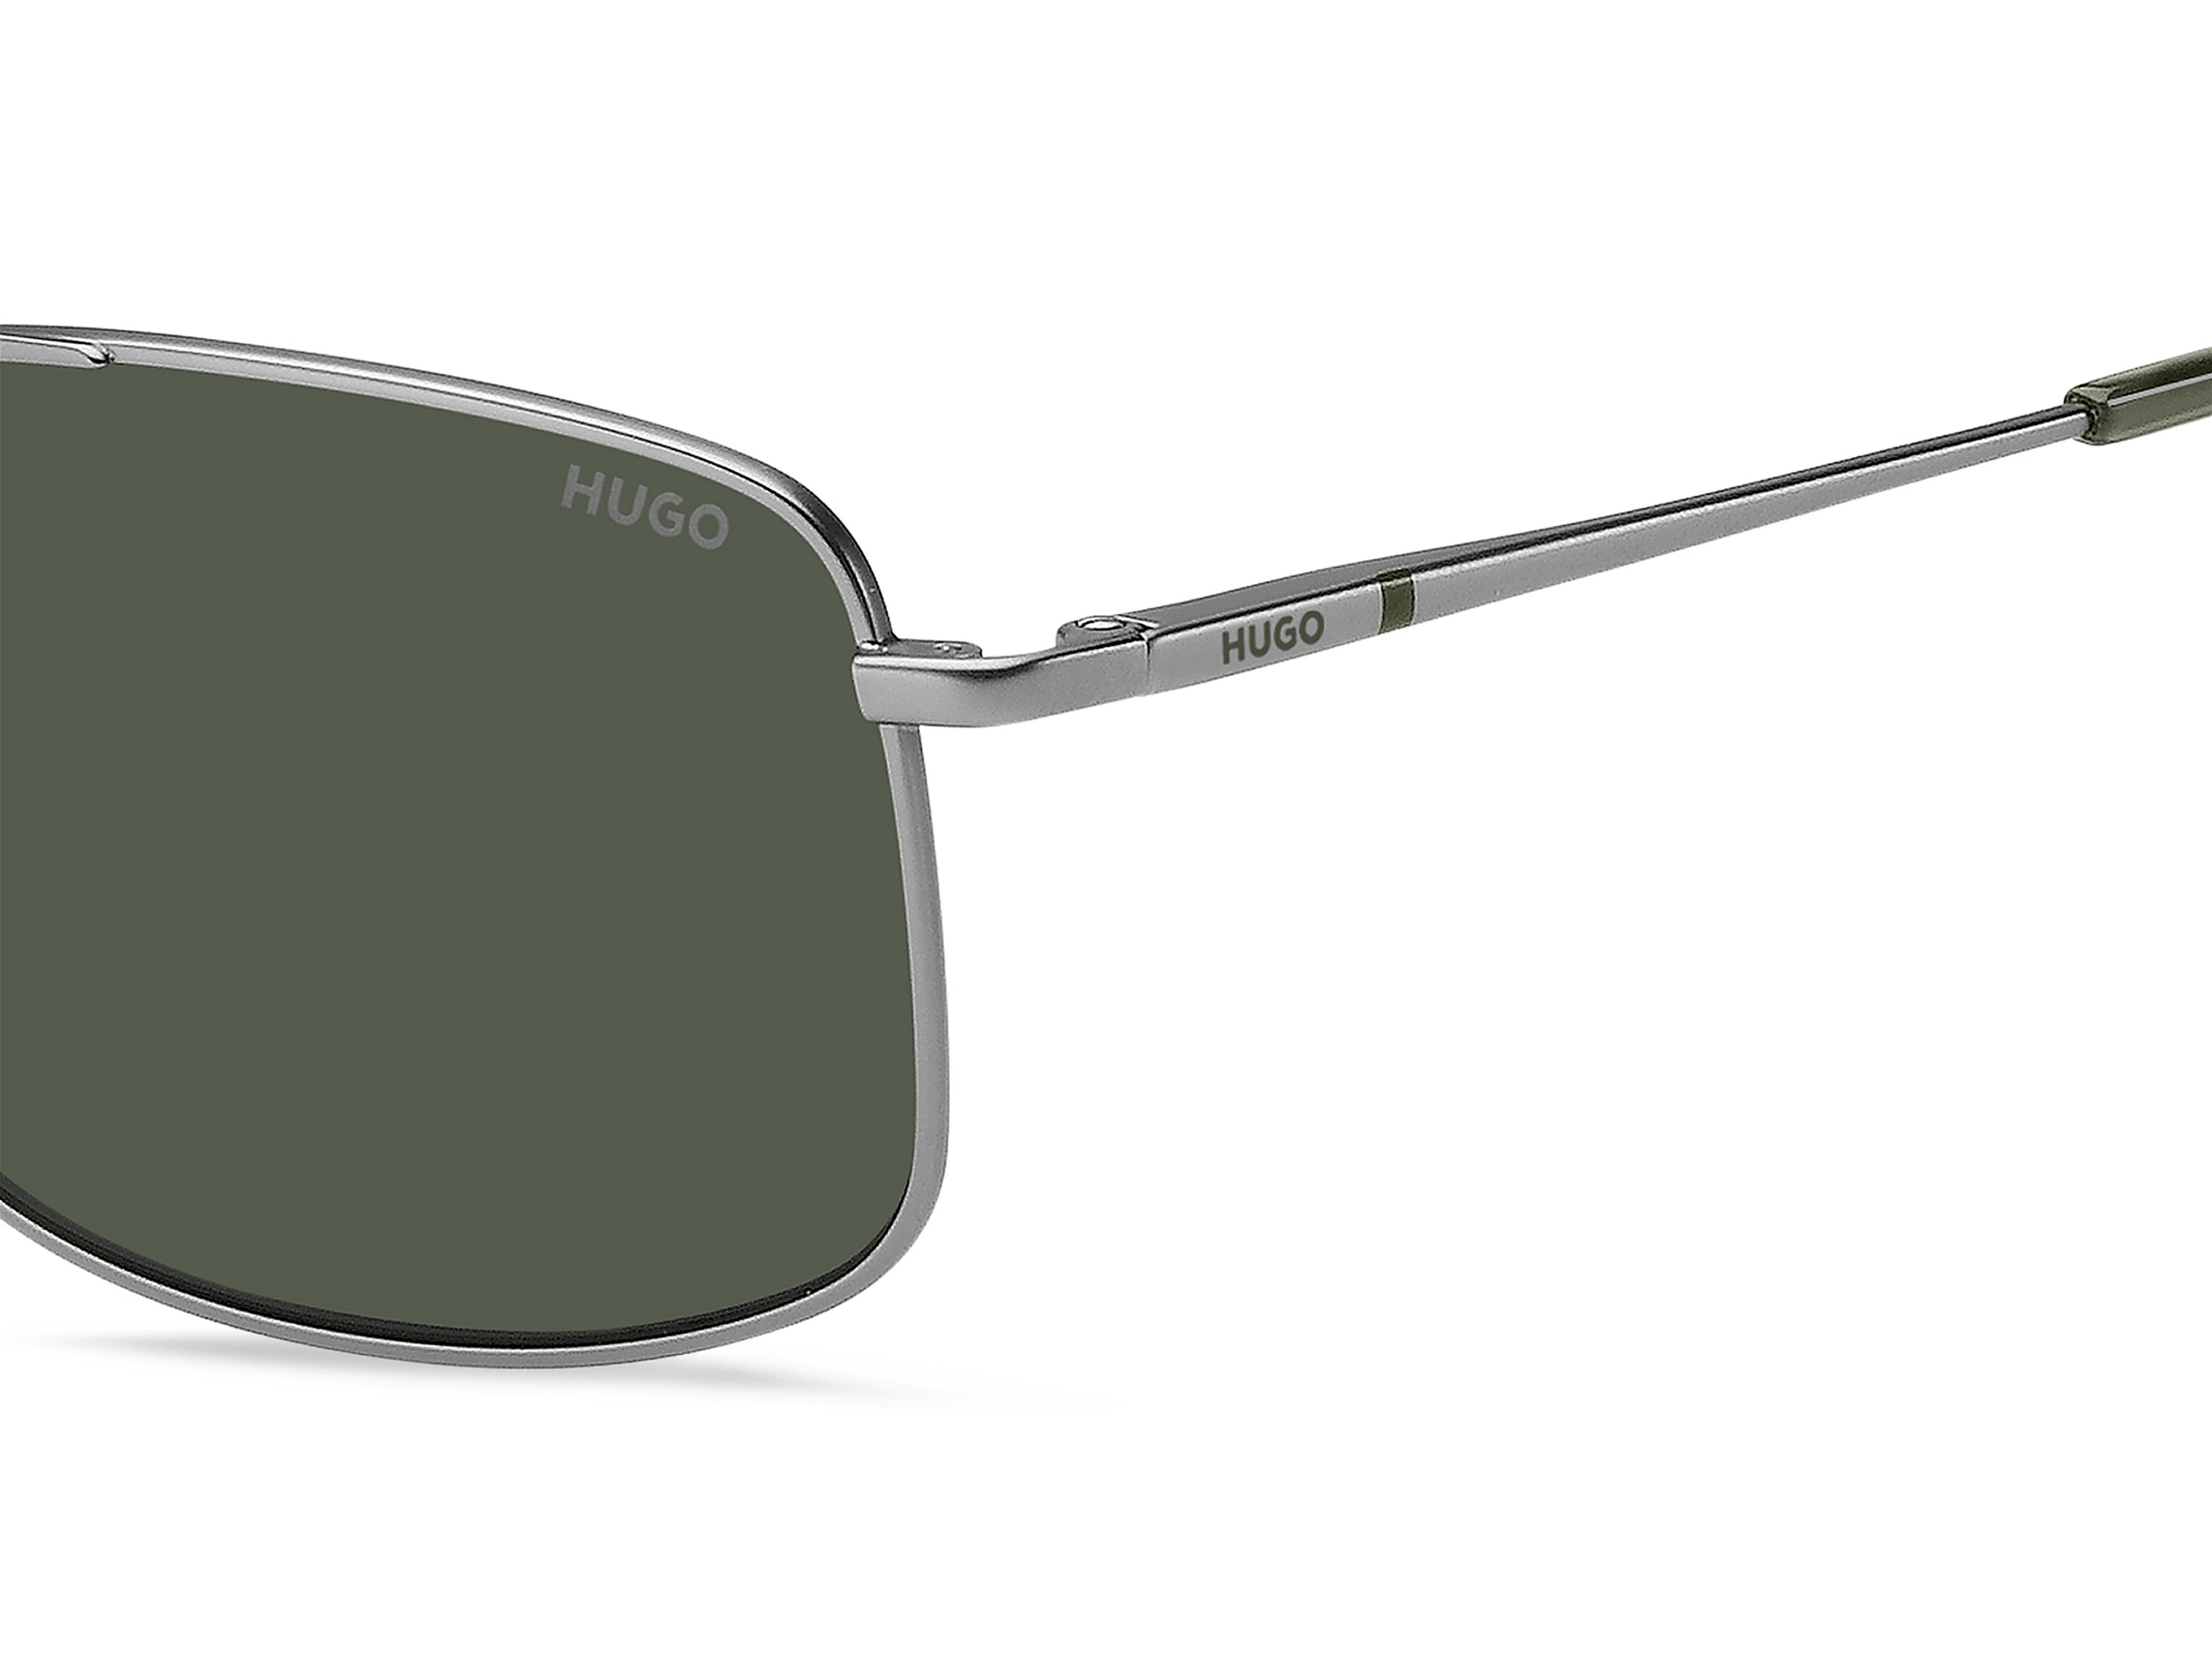 Das Bild zeigt die Sonnenbrille HG1287/S SMF von der Marke Hugo in grau.